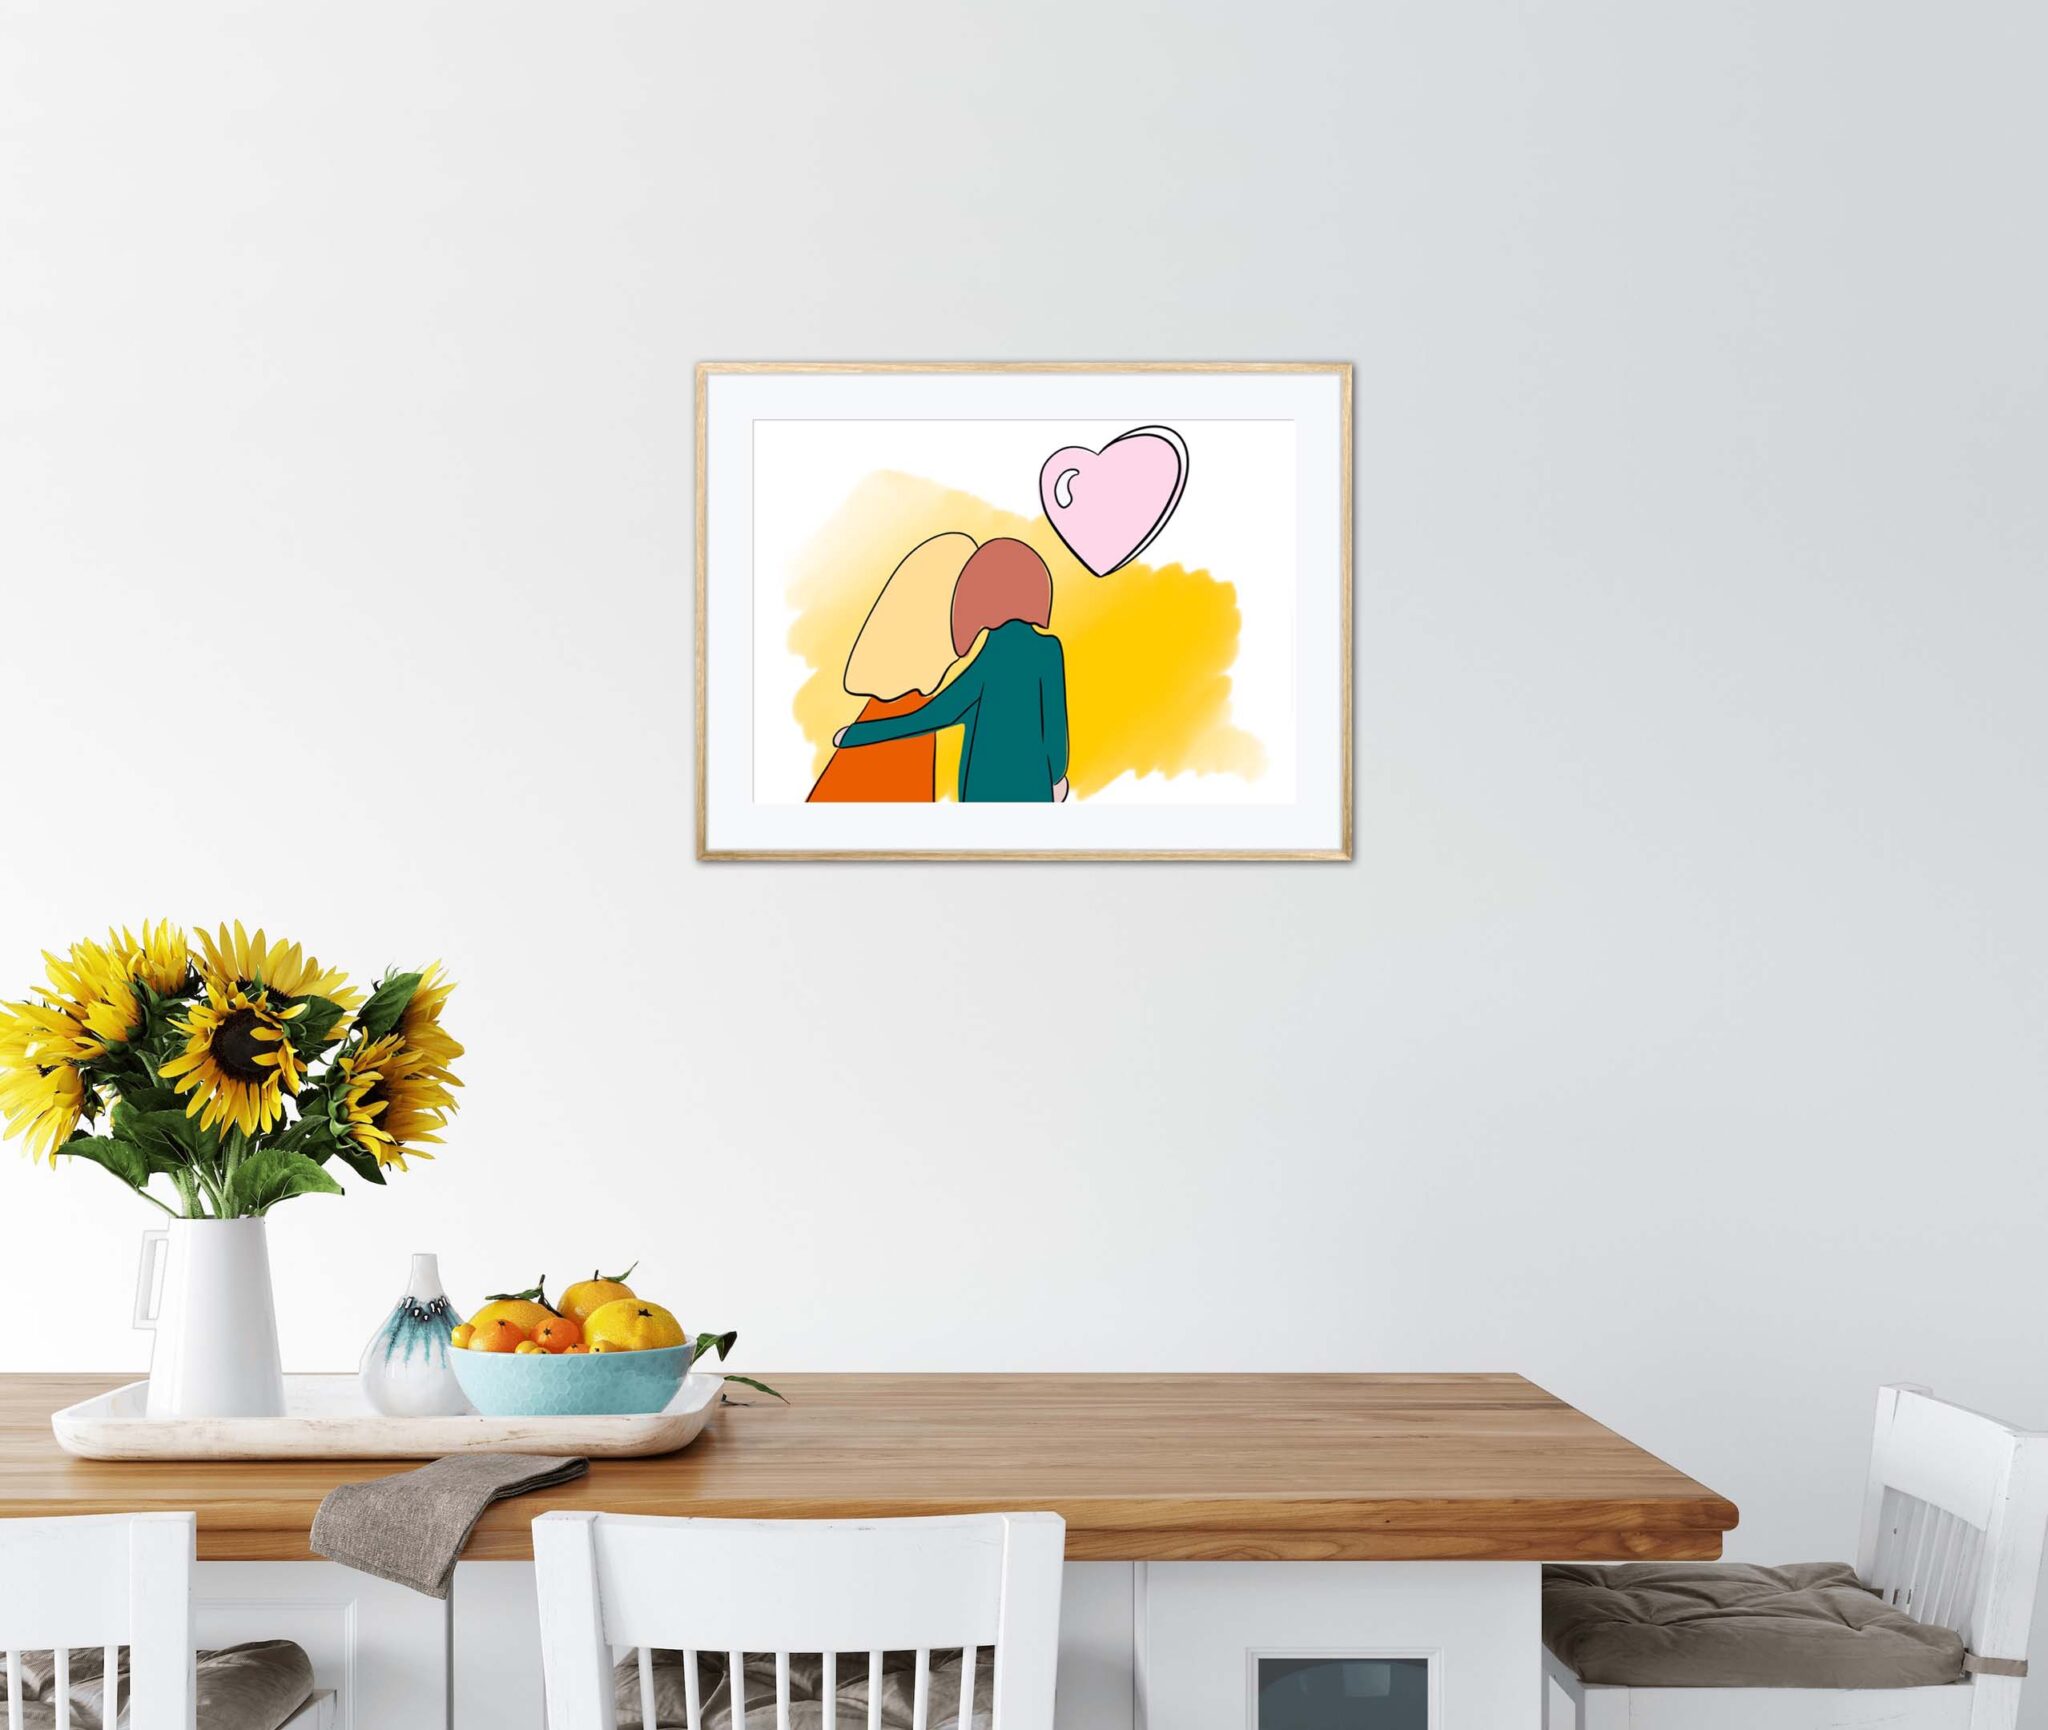 Affiche couple amour dans un cadre, dessin d'un couple amoureux de dos, poster, décoration murale, intérieur, tableau d'une illustration minimaliste de DENADDA.